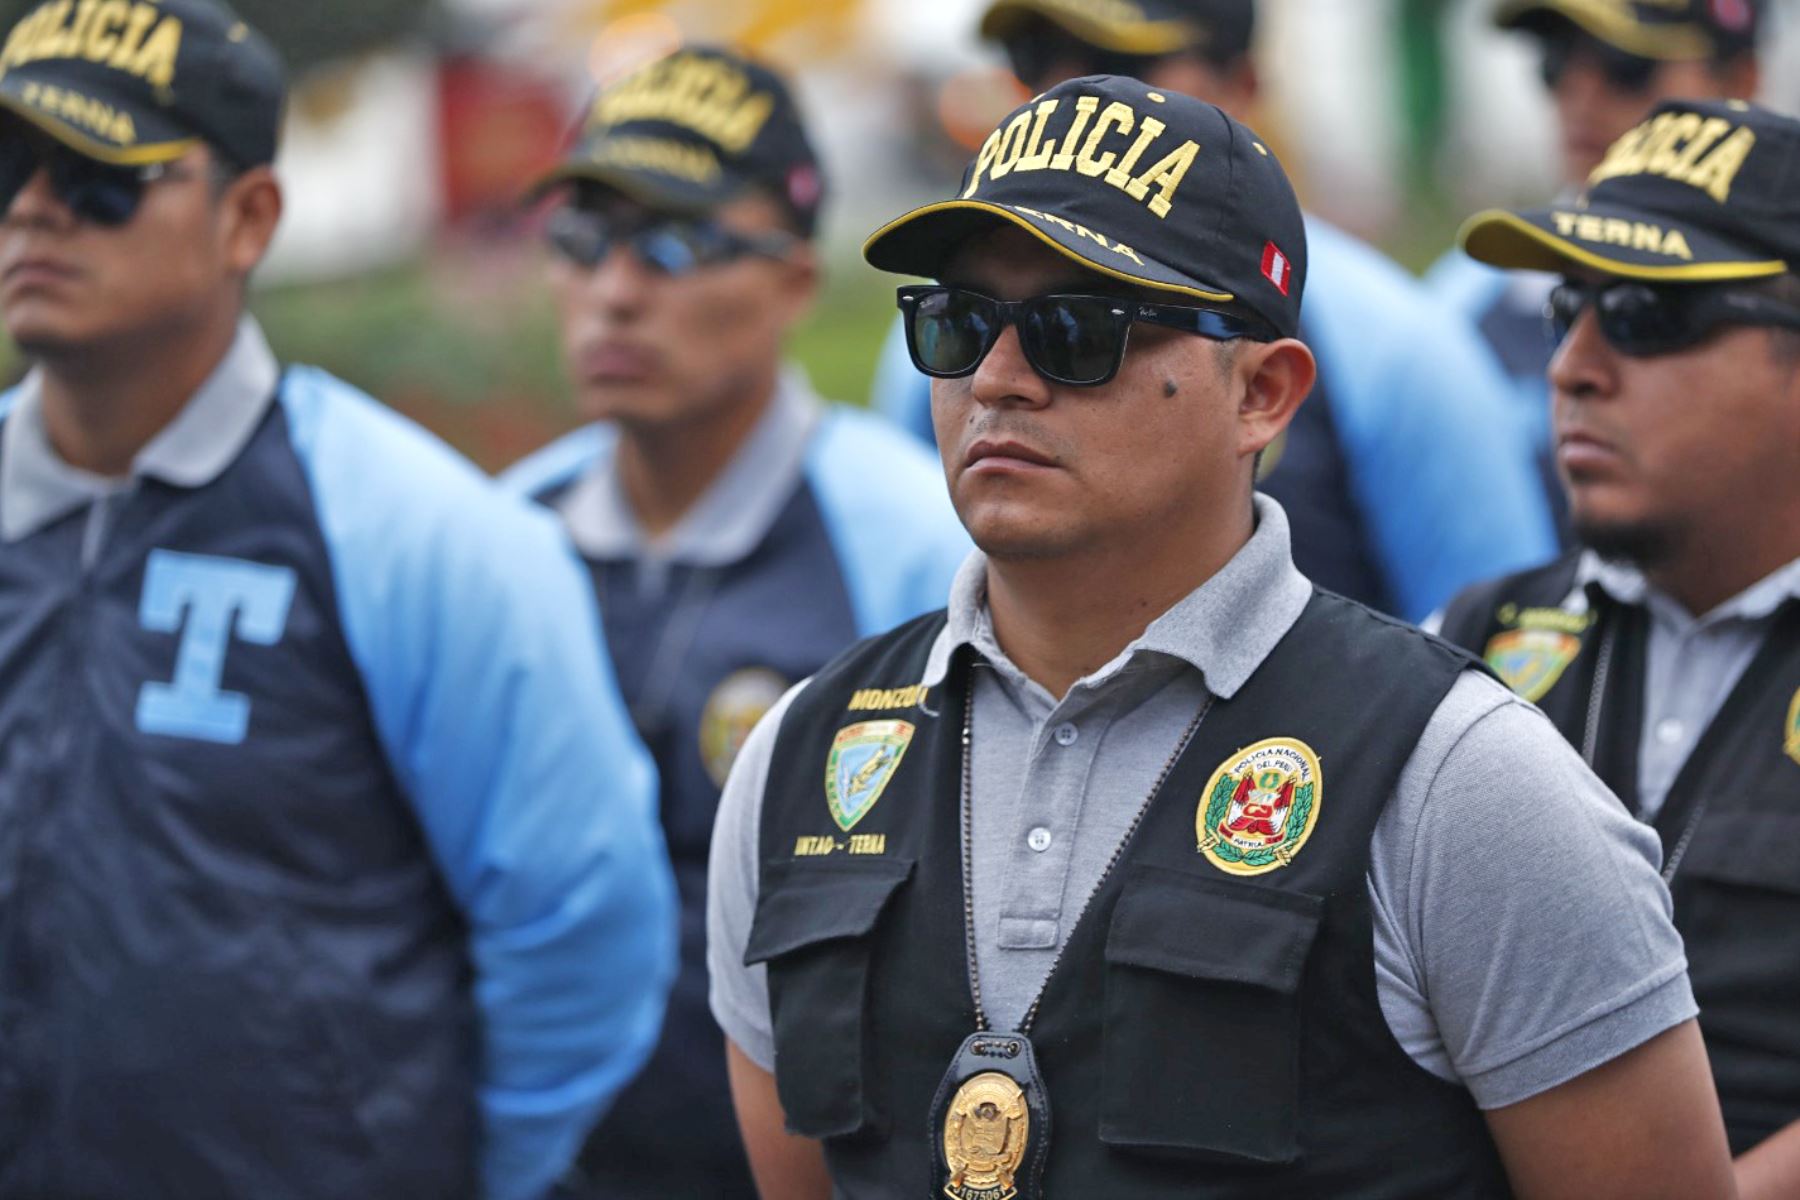 El Grupo Terna son efectivos de la Policía Nacional del Perú que se infiltran y se mimetizan en zonas delictivas e intervienen en los delitos flagrantes, y ahora cuenta con una nueva base de operaciones en el distrito de El Agustino. Foto: ANDINA/Daniel Bracamonte